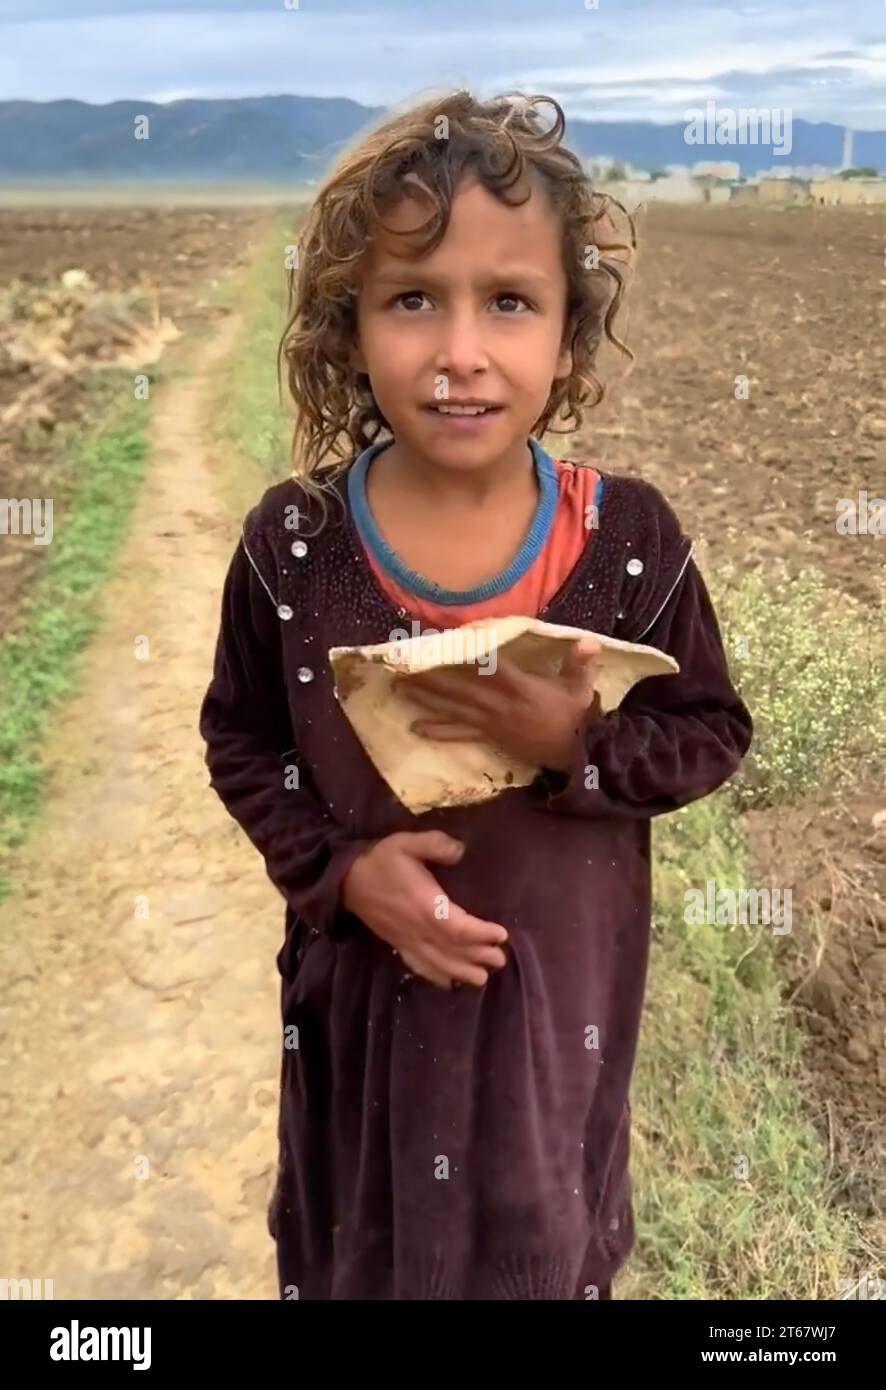 very poor Afghan girl Stock Photo